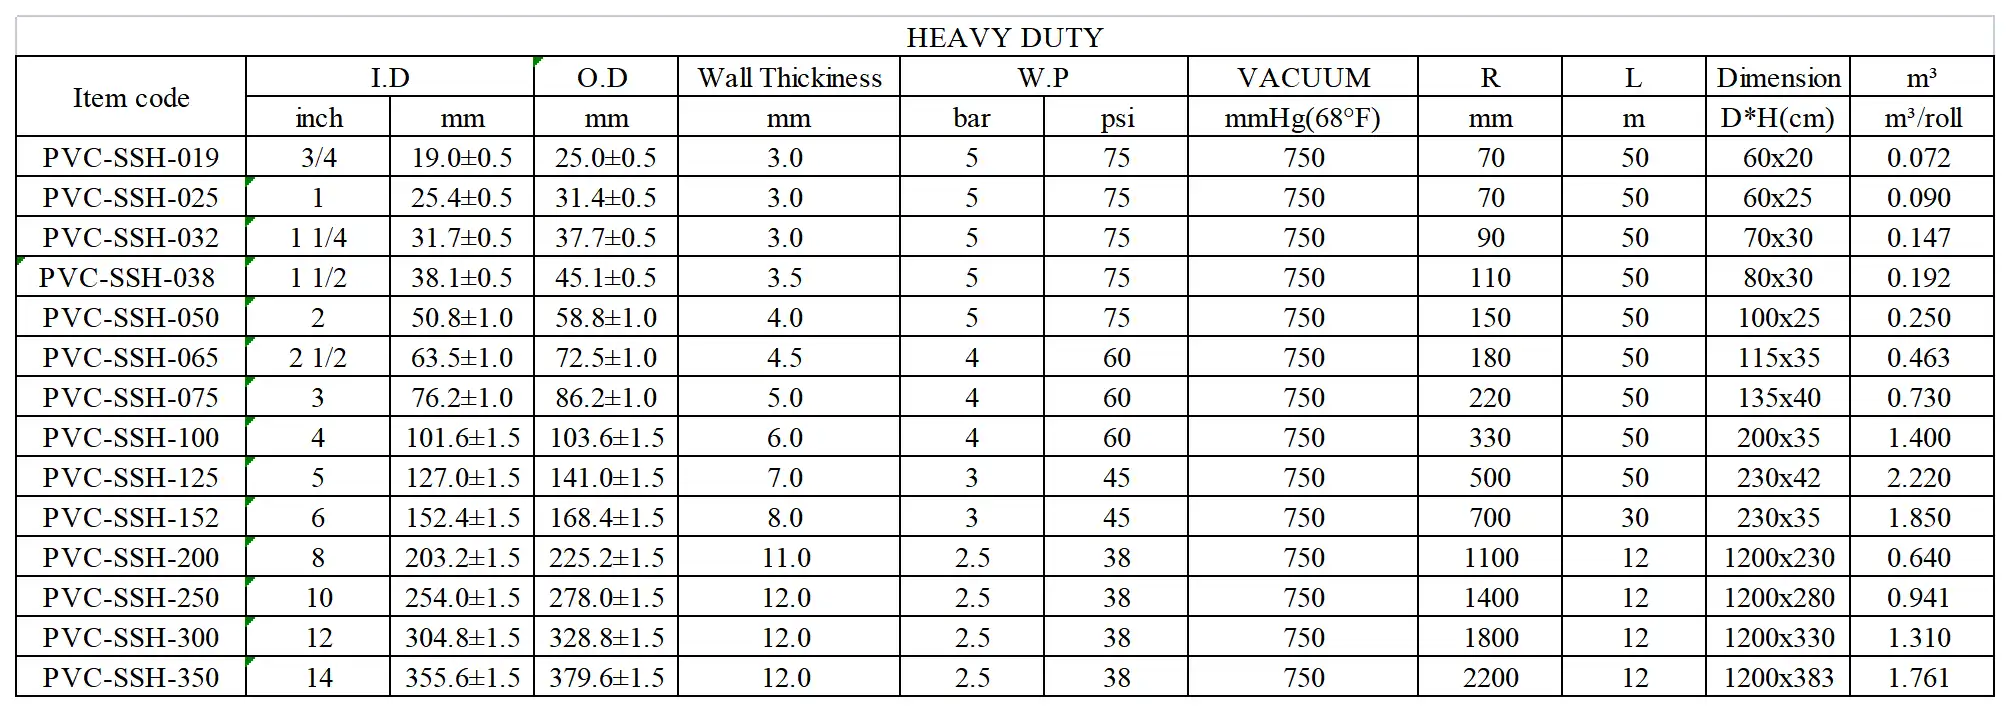 PVC suction hose-heavy duty